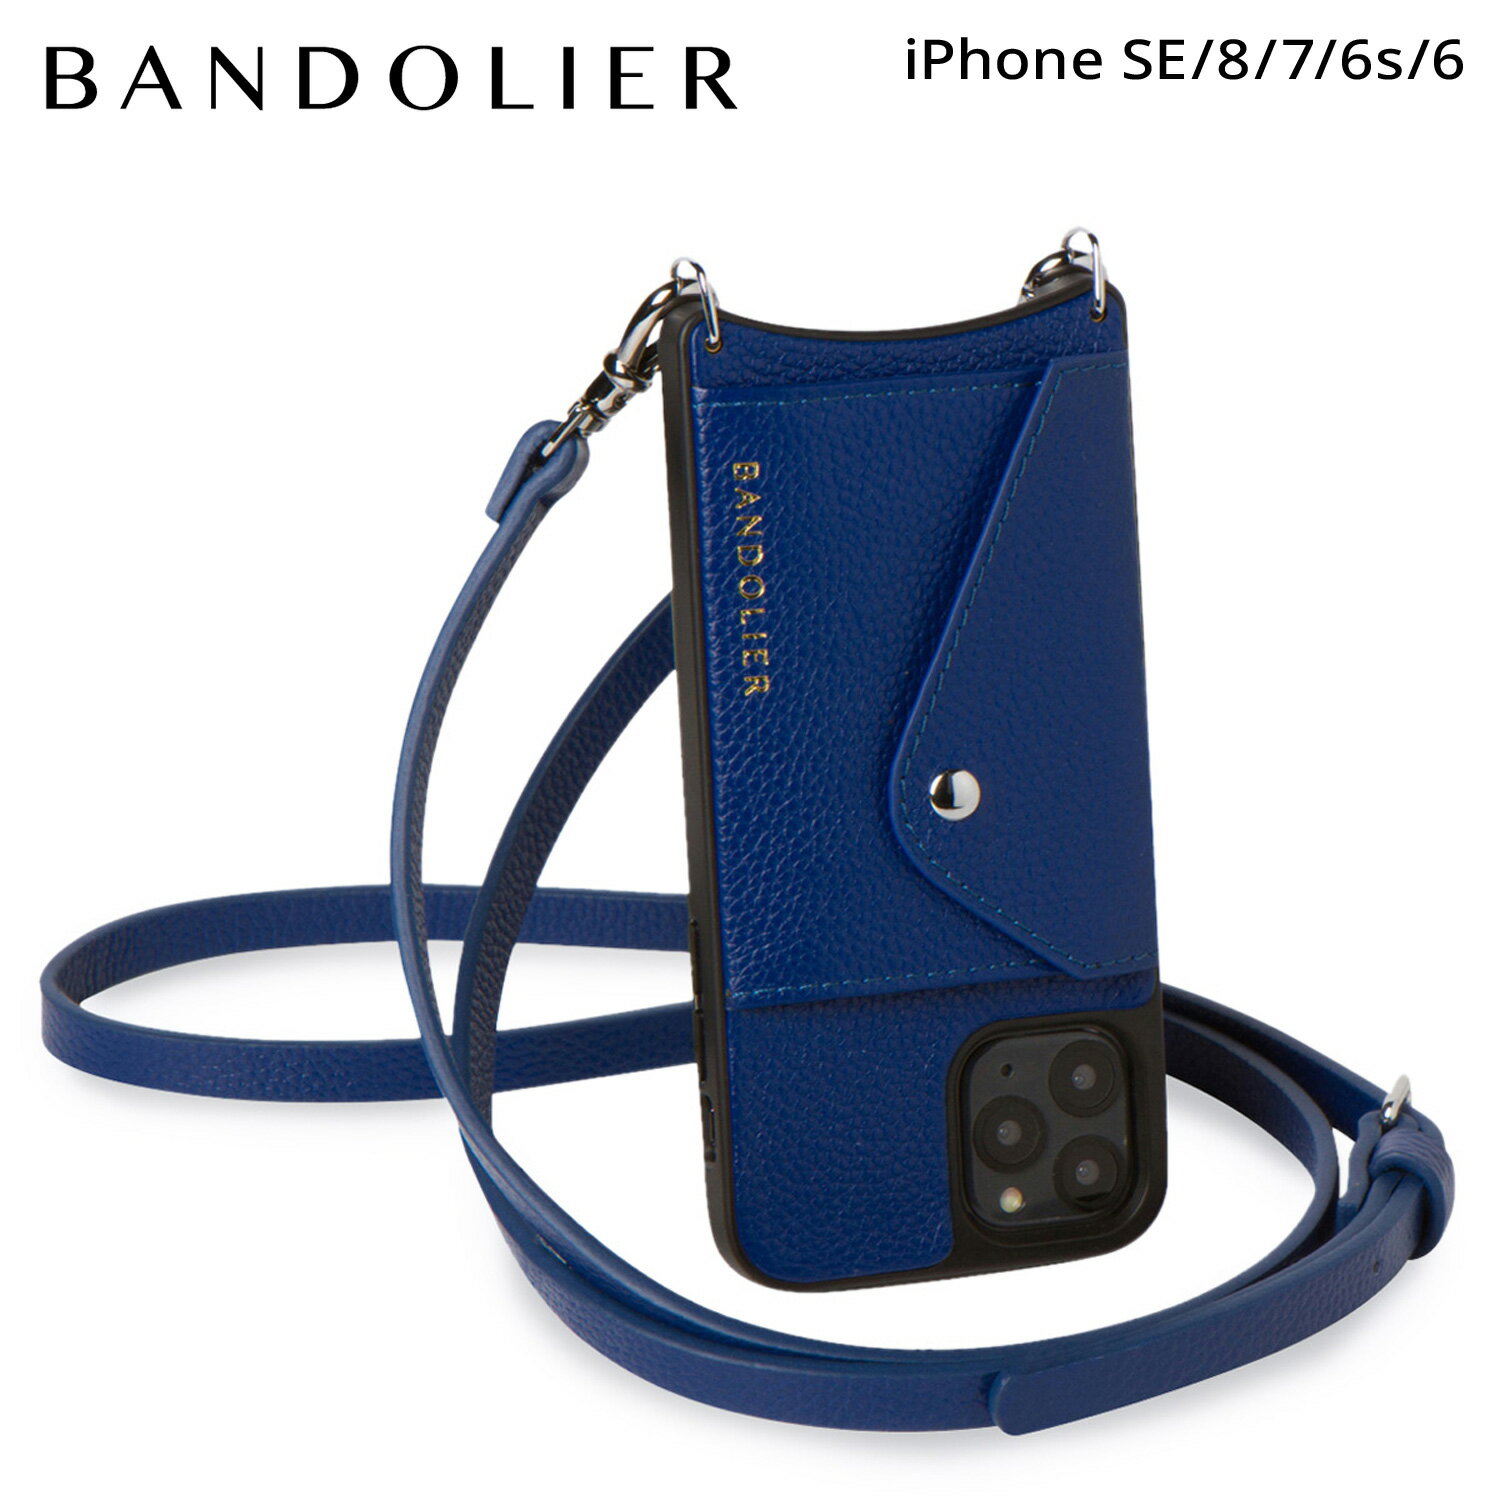 BANDOLIER バンドリヤー iPhone SE SE2 8 iPhone 7 6s スマホケース スマホショルダー 携帯 アイフォン ドナ サイドスロット ロイヤルブルー メンズ レディース DONNA SIDE SLOT ROYAL BLUE ブルー 14DON